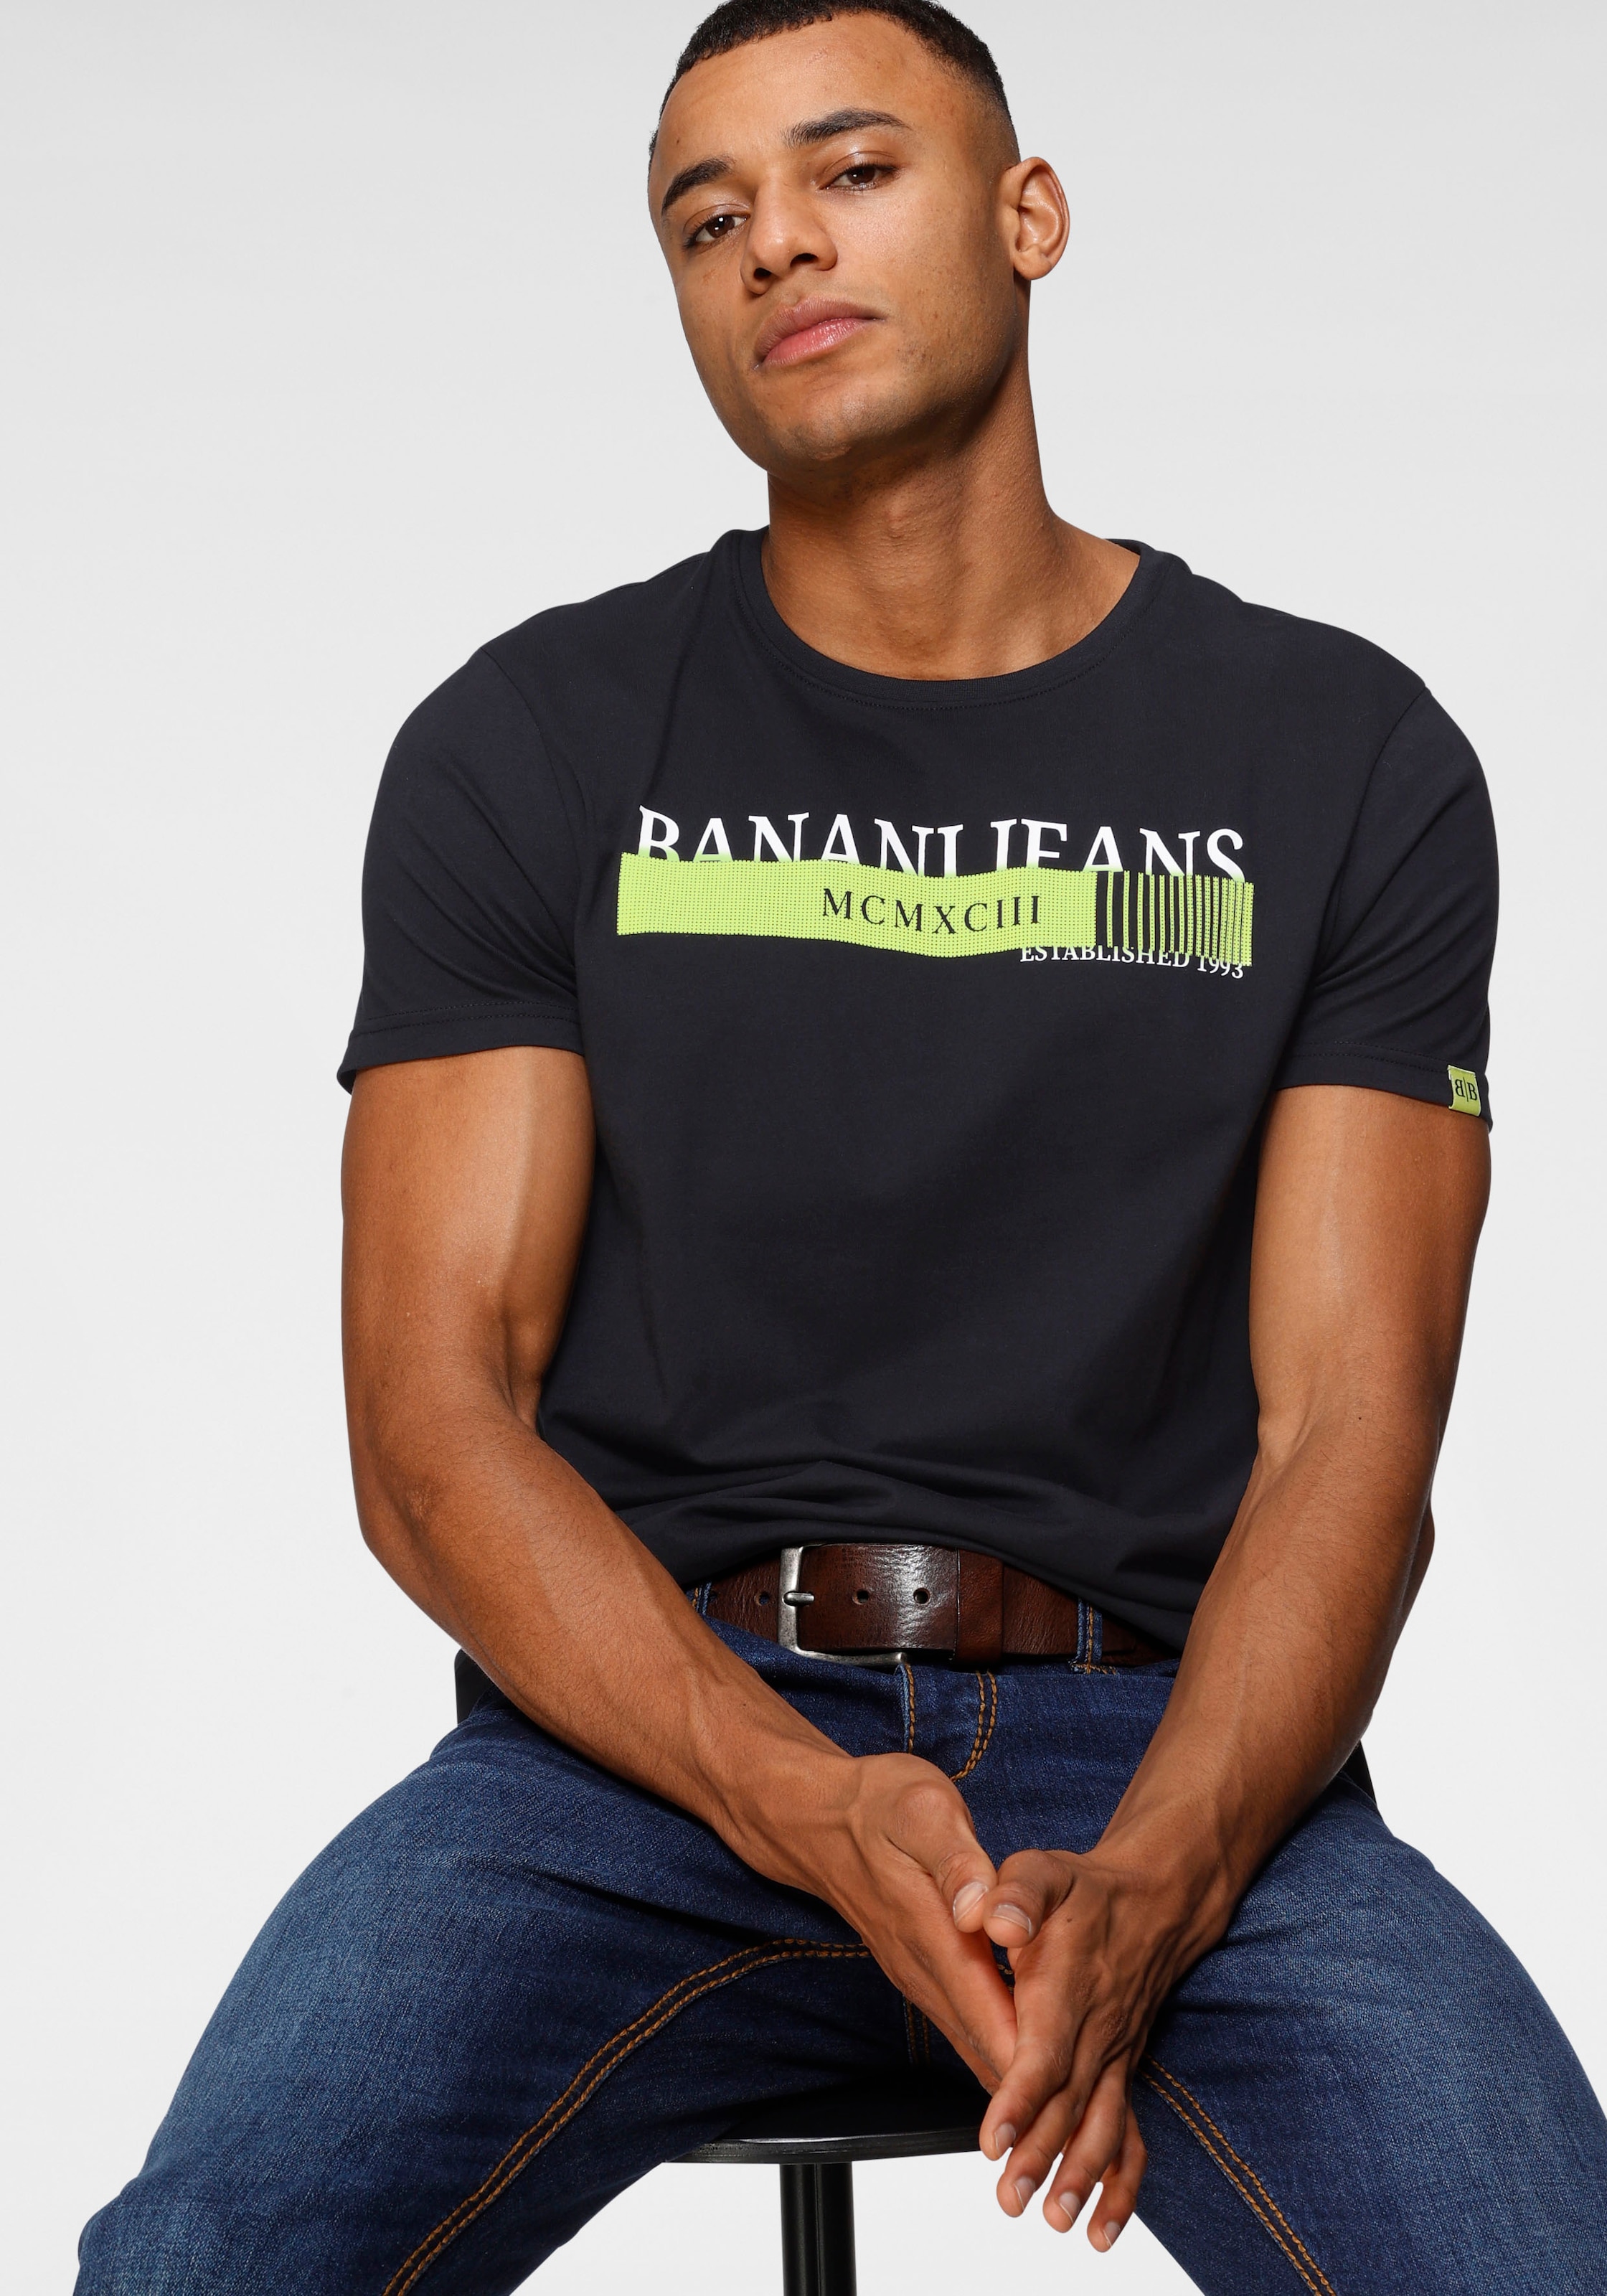 Banani OTTO Bruno neonfarbenen Print mit online bei shoppen T-Shirt,